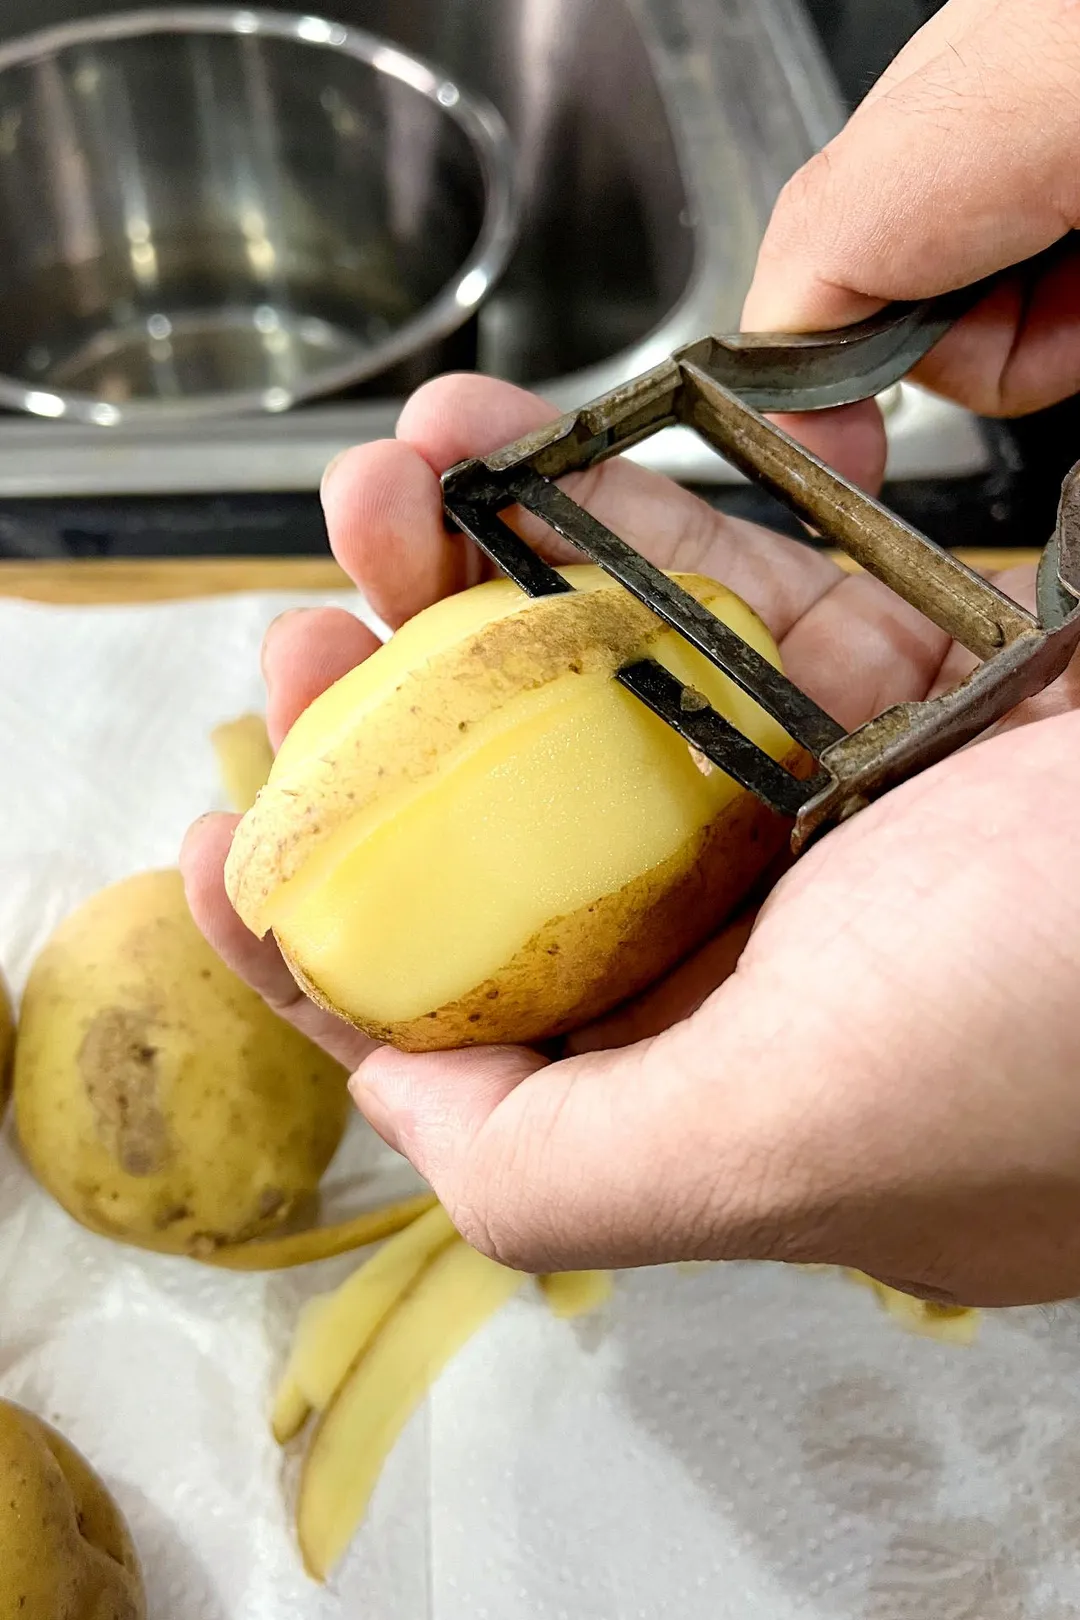 peeling a potato